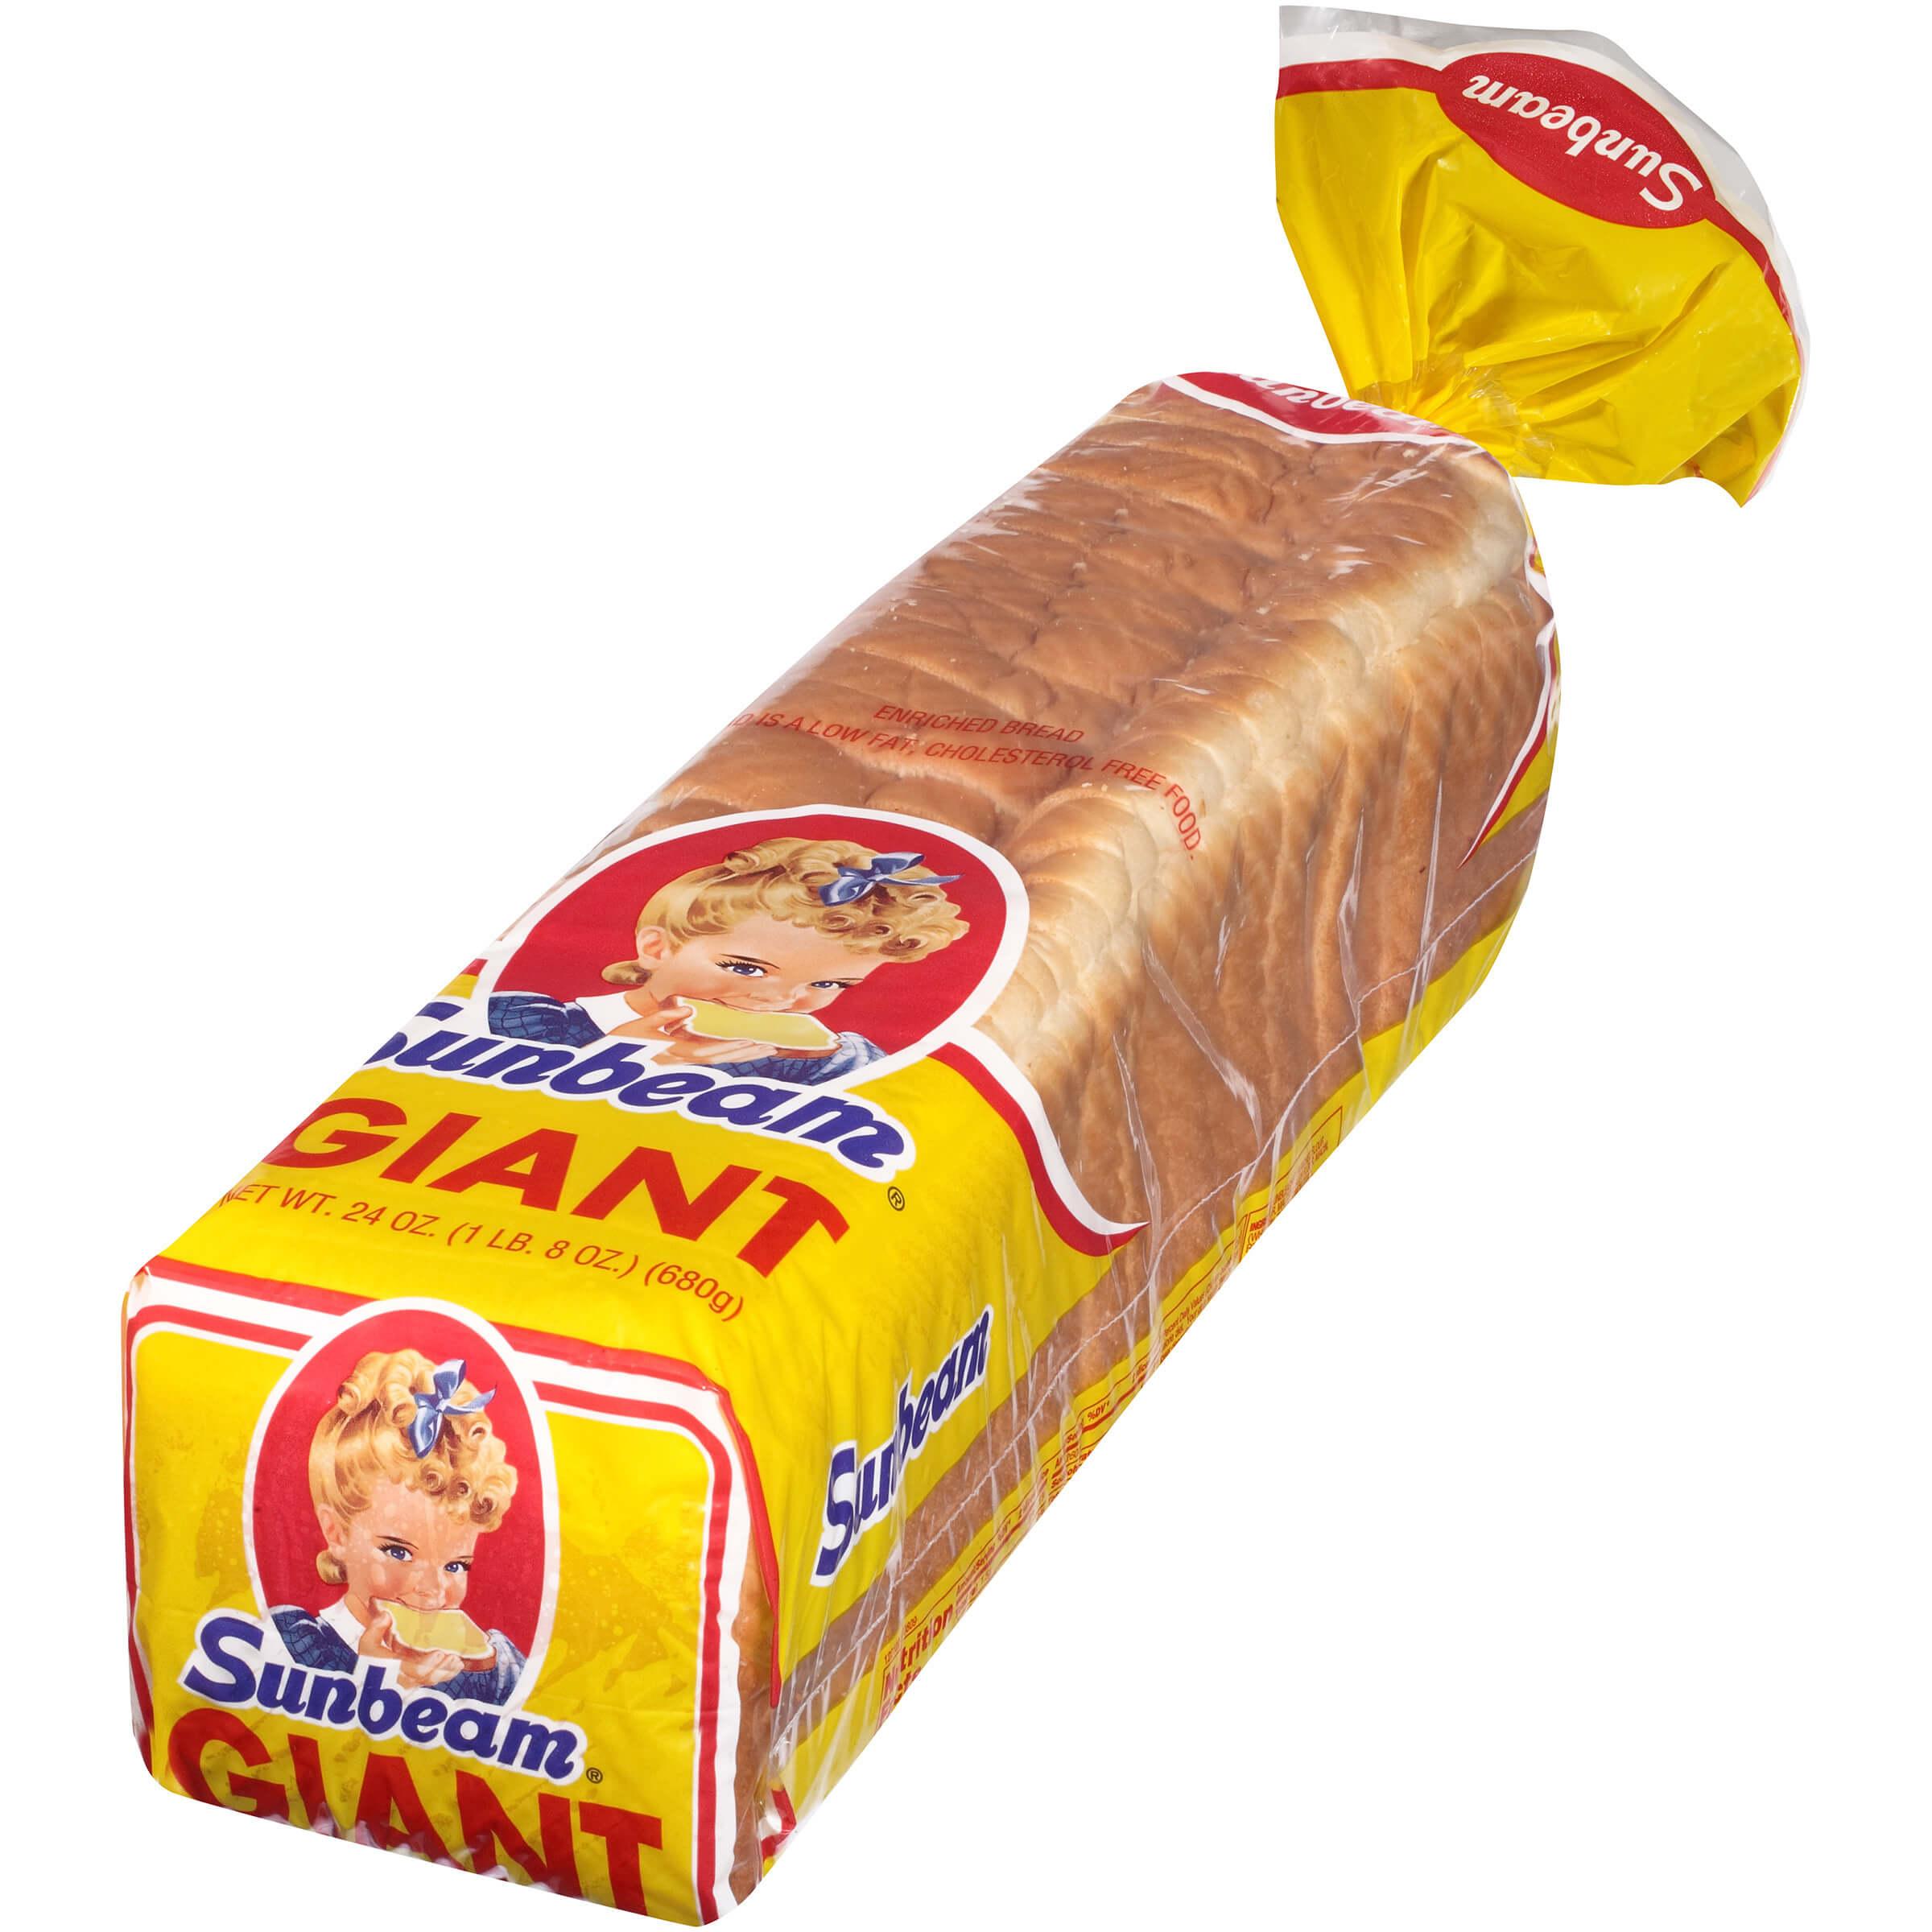 Sunbeam - Giant Sliced Bread, 24 oz